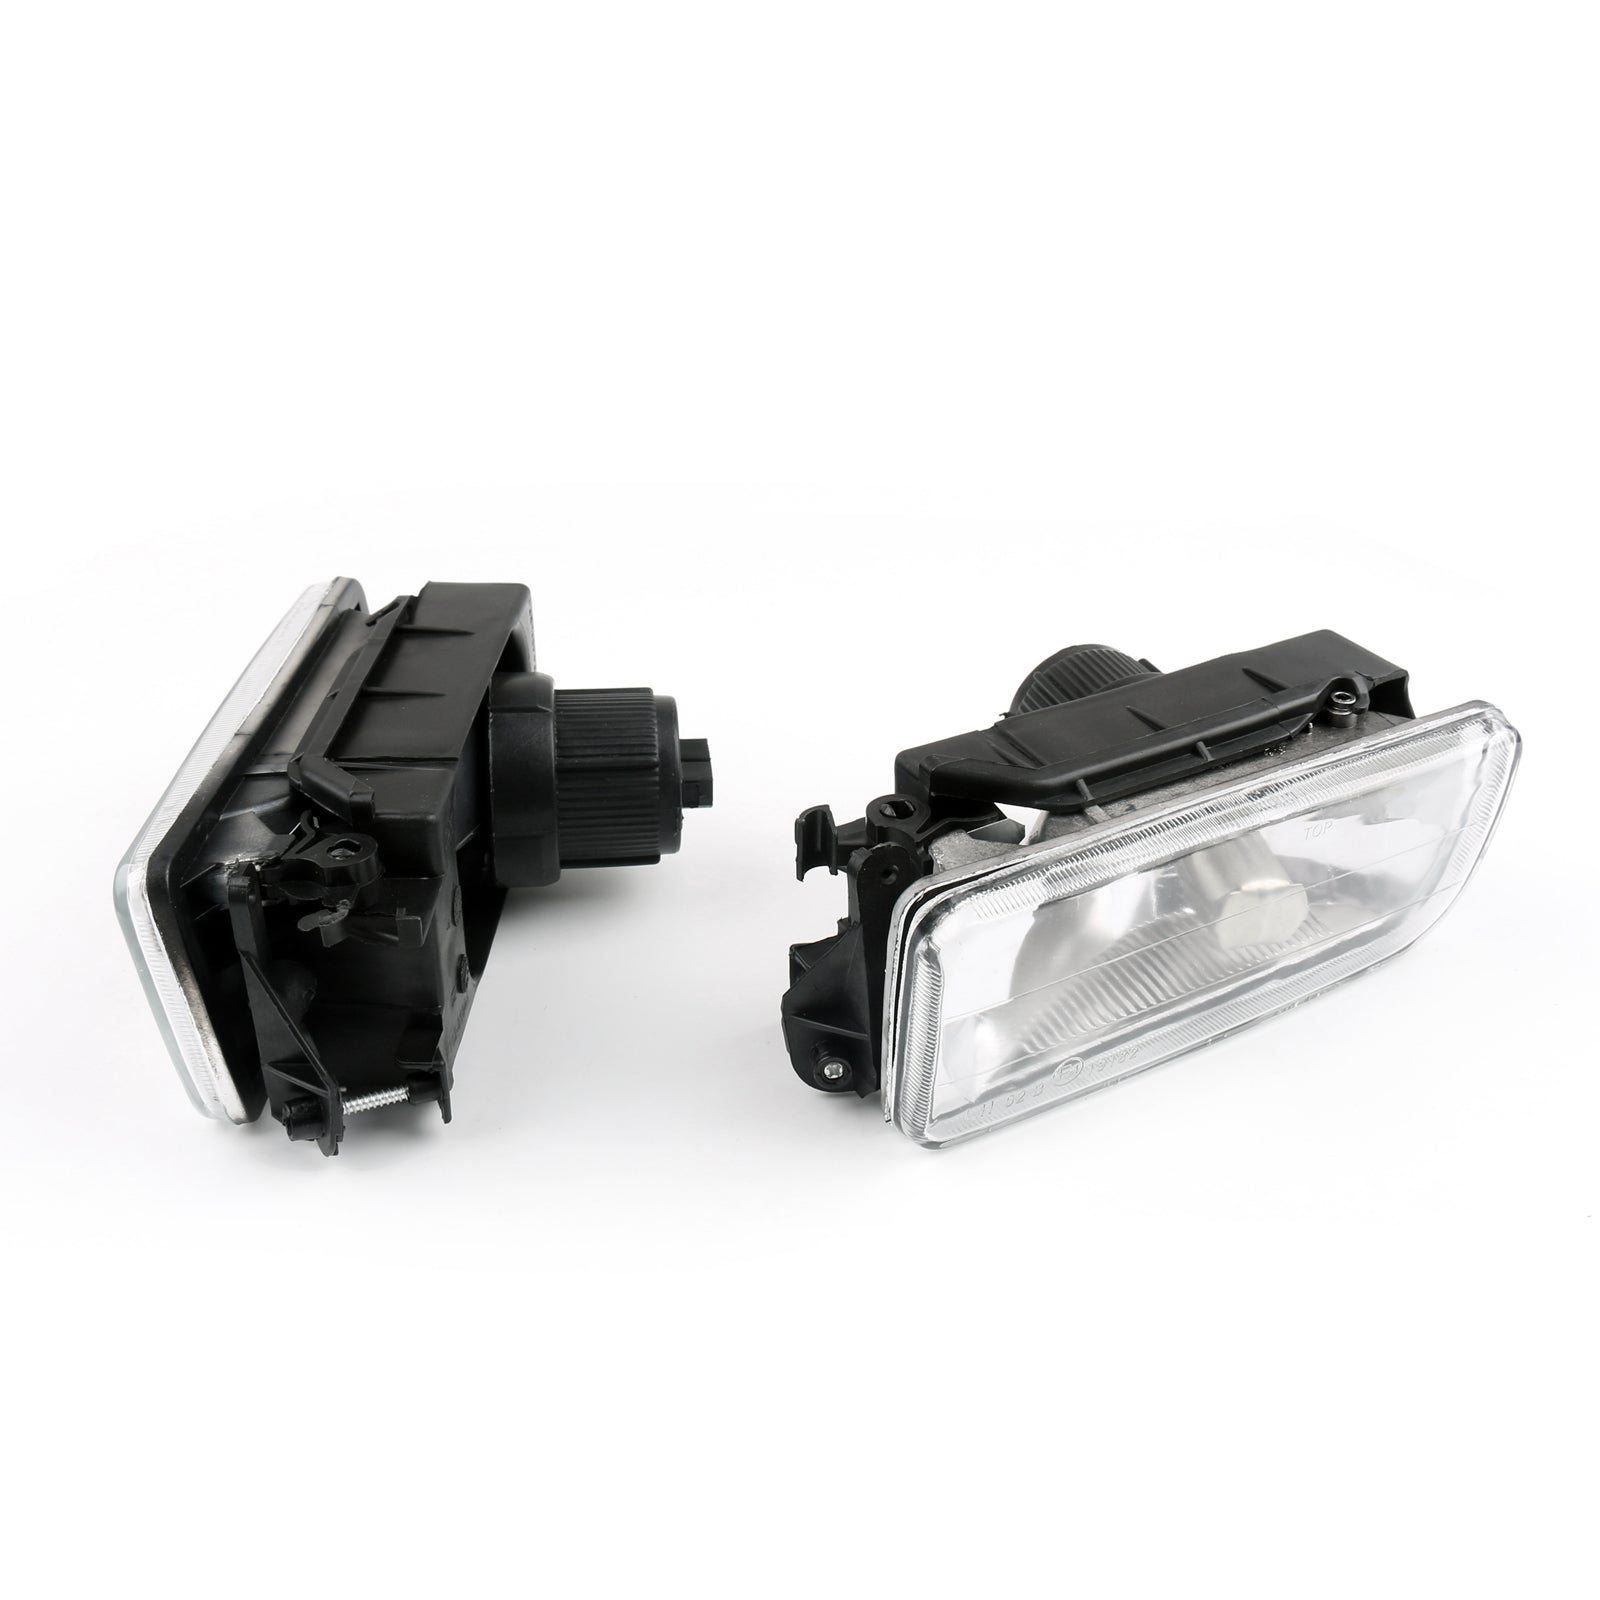 Phares antibrouillard lentille transparente ensemble de paires de phares antibrouillard LH RH sans ampoule pour BMW 92-98 E36 série 3 générique